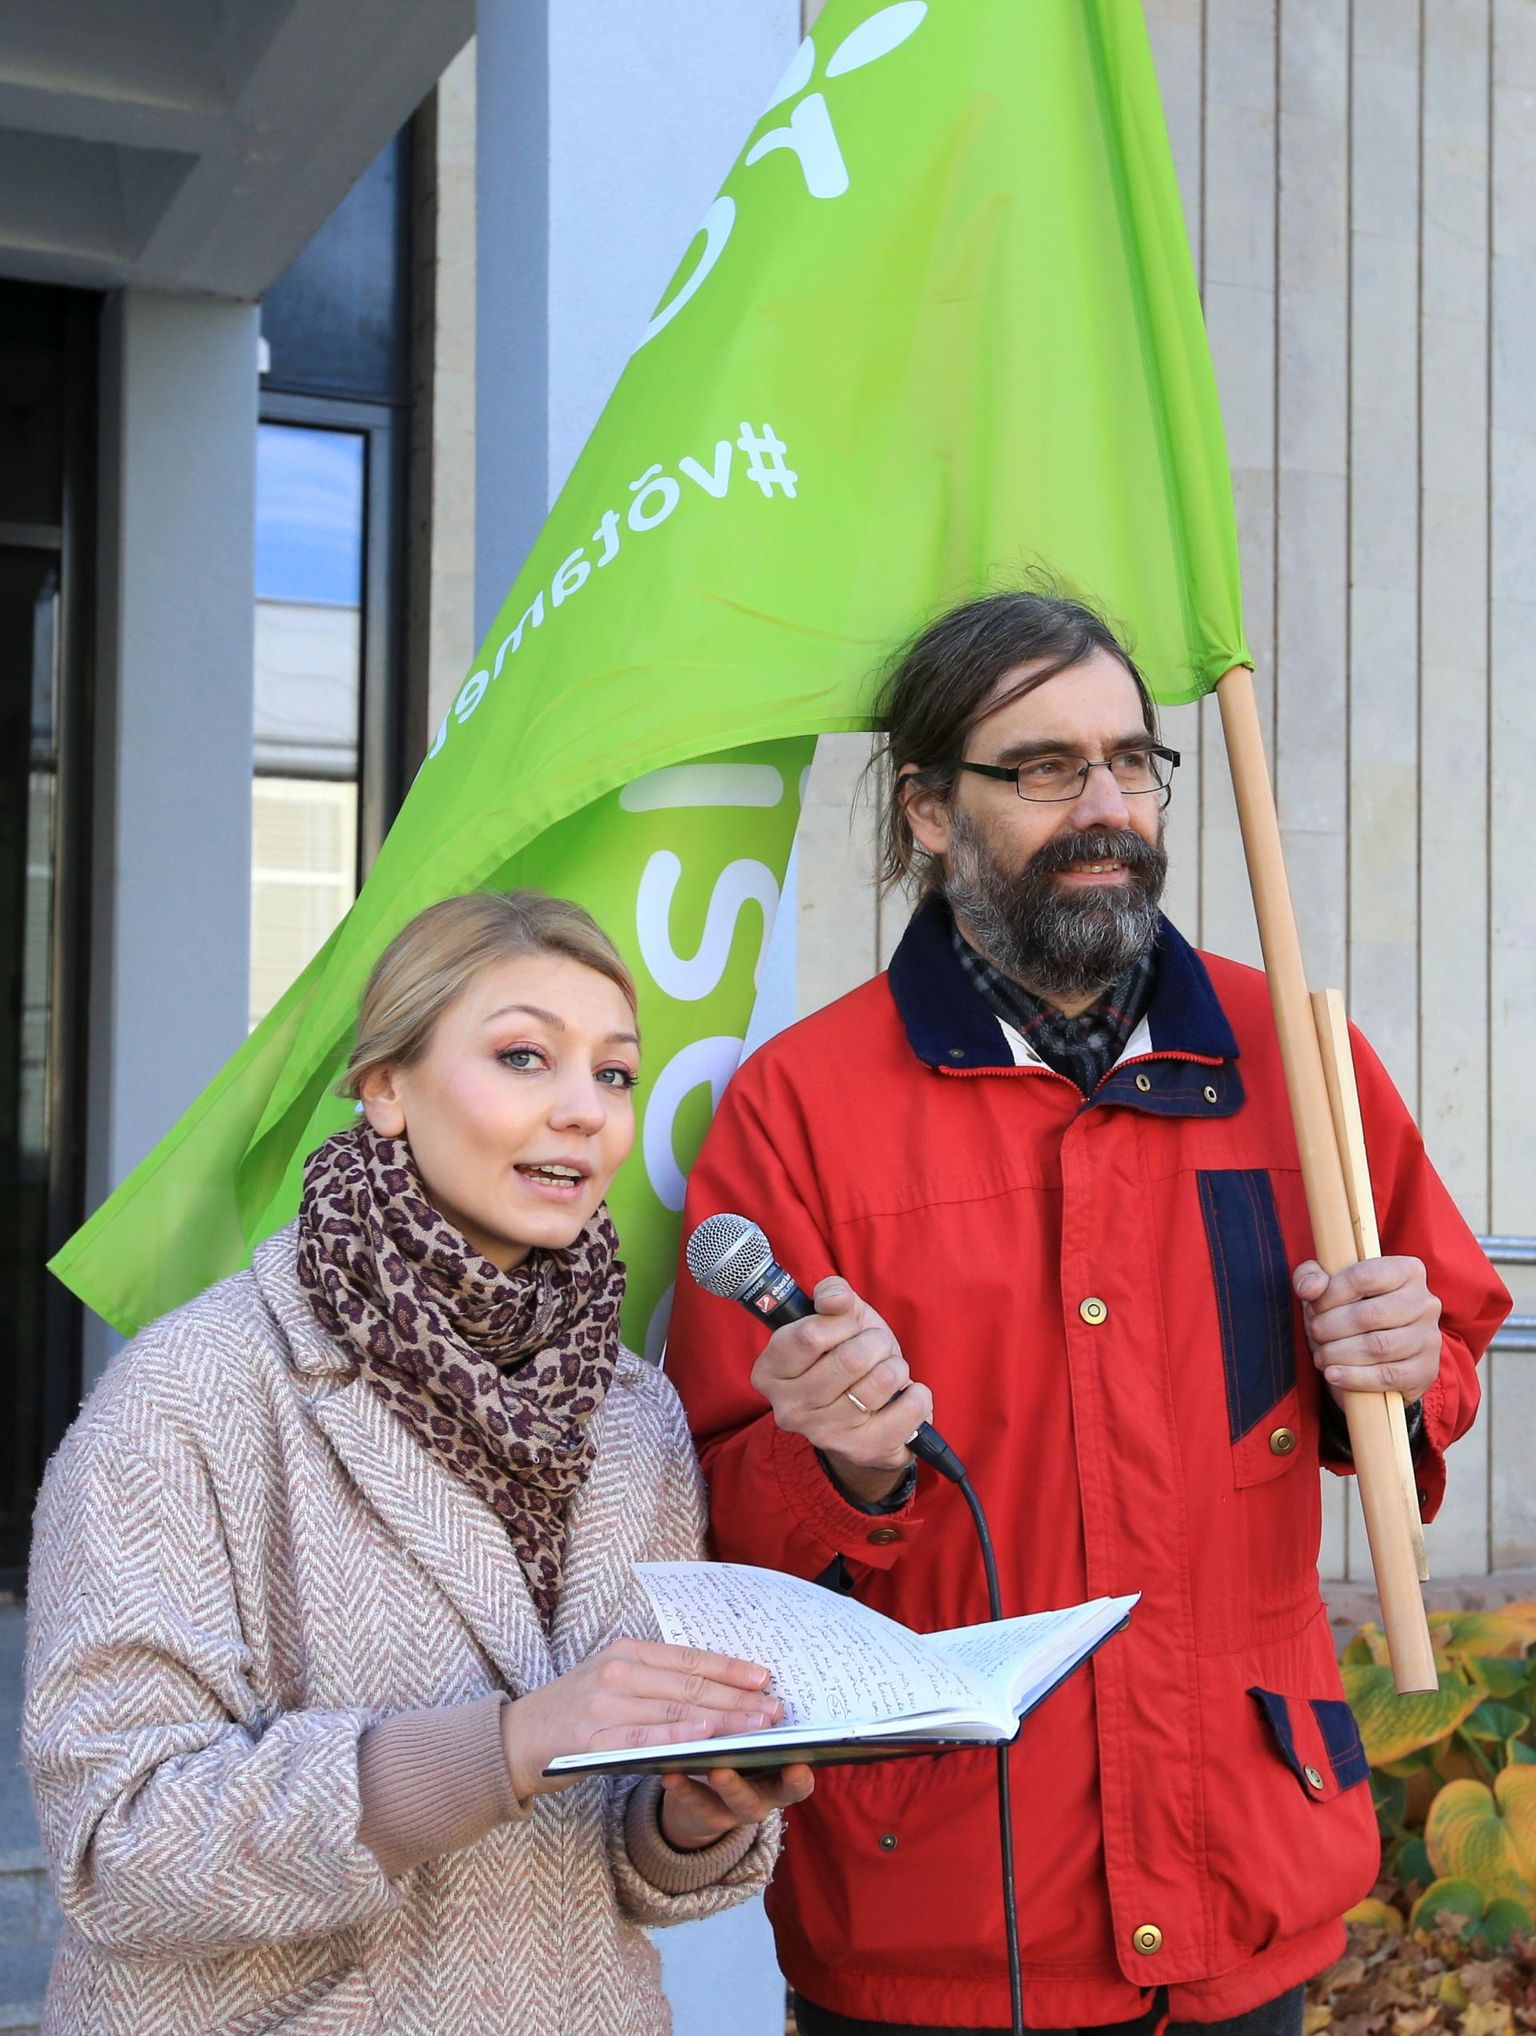 Roheliste kaks kaasjuhti, Johanna Maria Tõugu ja Marko Kaasik otsustasid koos ülejäänud juhatusega kehva valimistulemuse tõttu tagasi astuda.